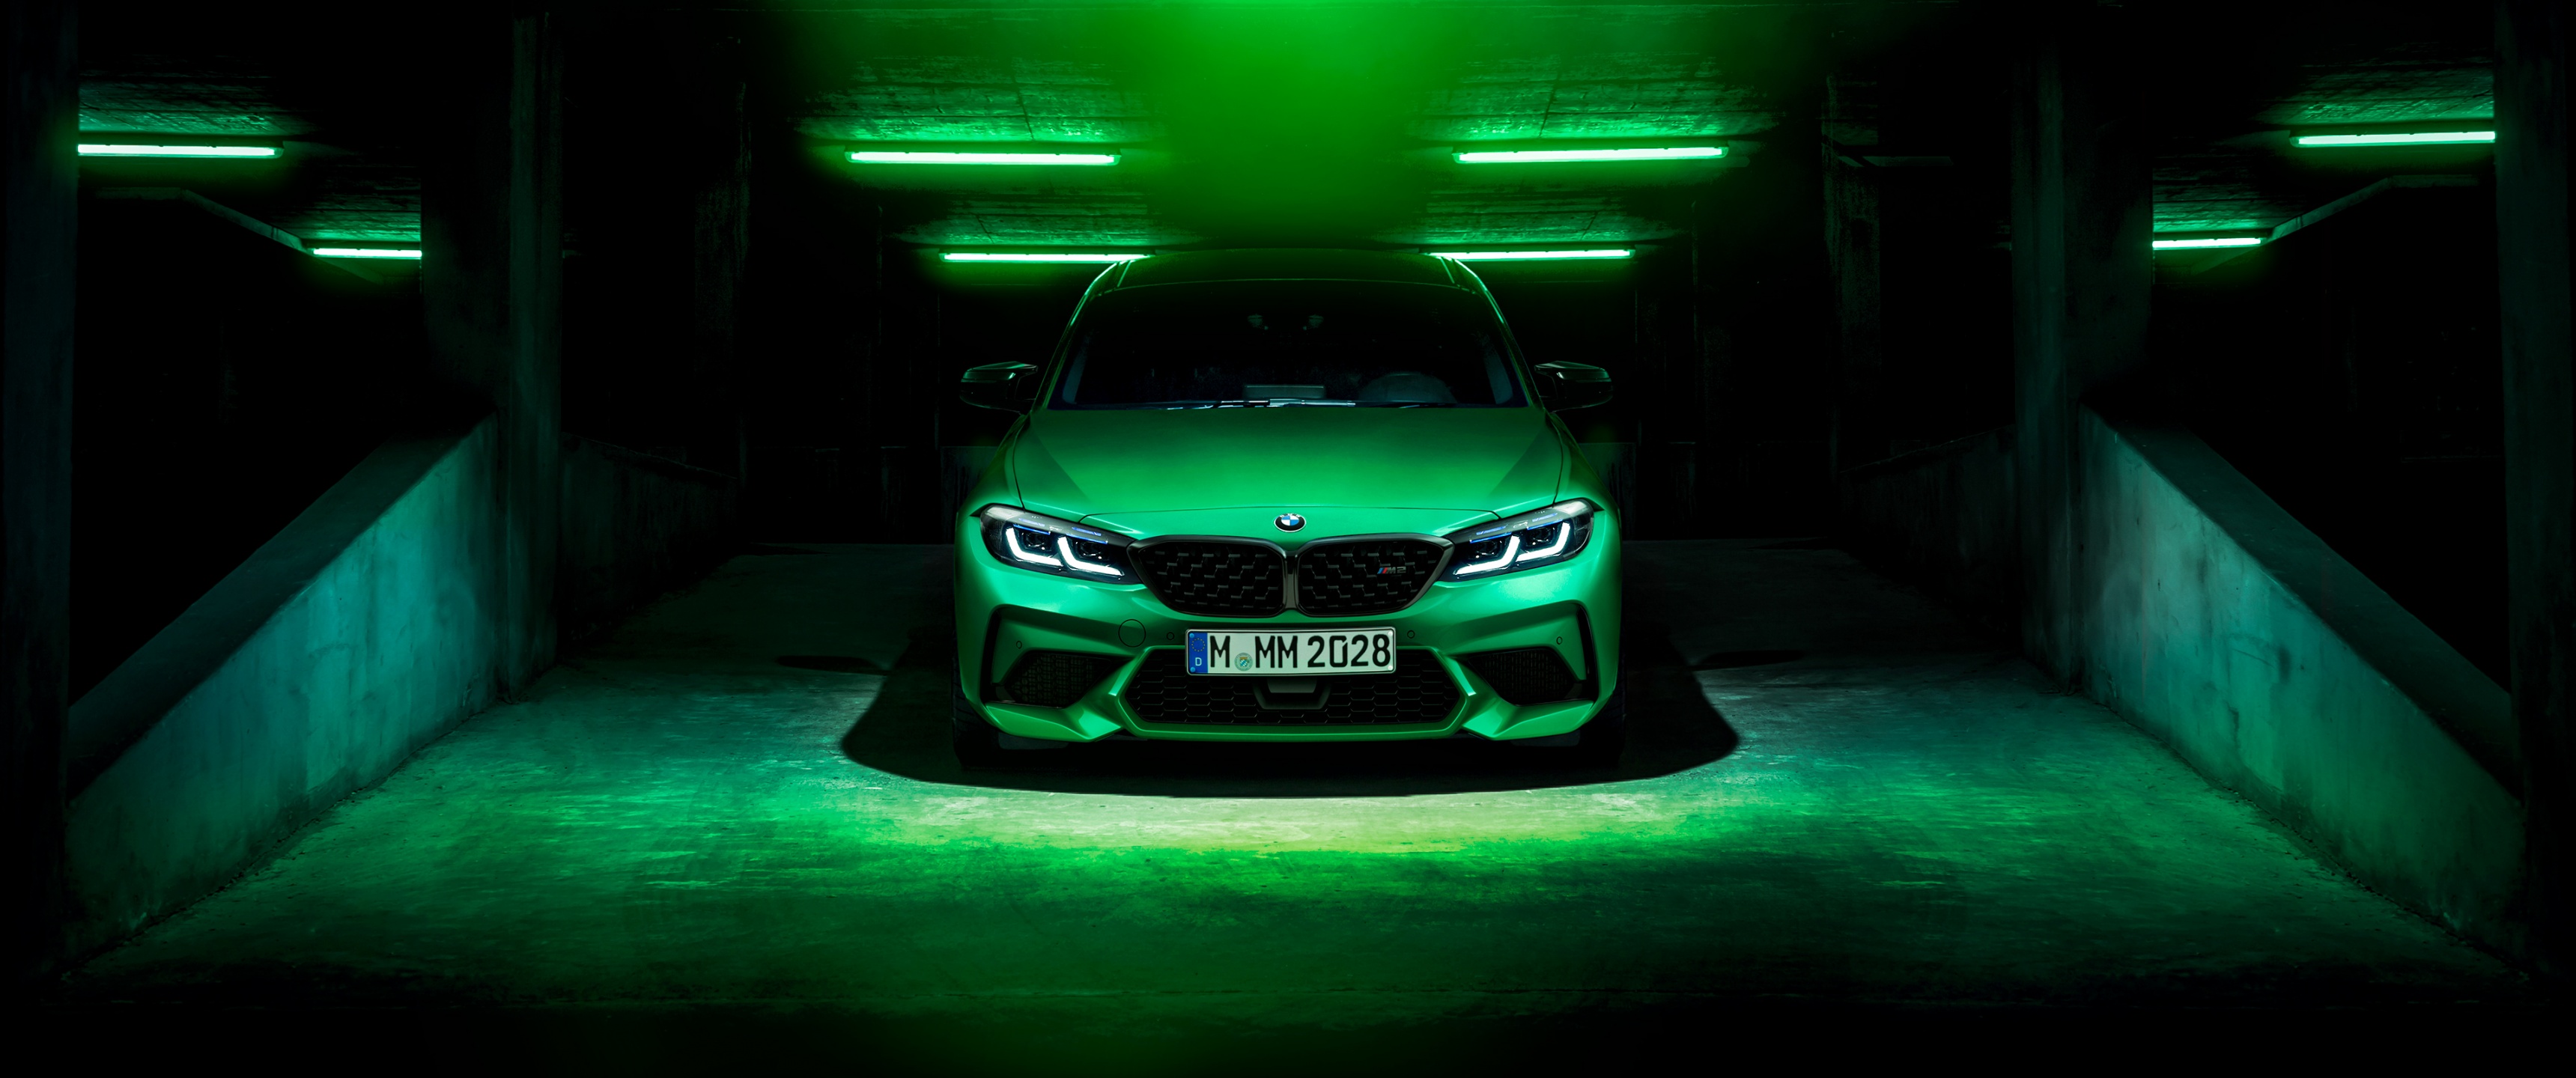 Nếu bạn đang tìm kiếm một hình nền BMW M2 4K độc đáo, hãy không nghĩ đến chỗ khác và nhấn vào ảnh của chúng tôi. Hình nền màu xanh đậm trên nền đen sẽ khiến chiếc xe BMW của bạn nổi bật trong những dòng xe khác.